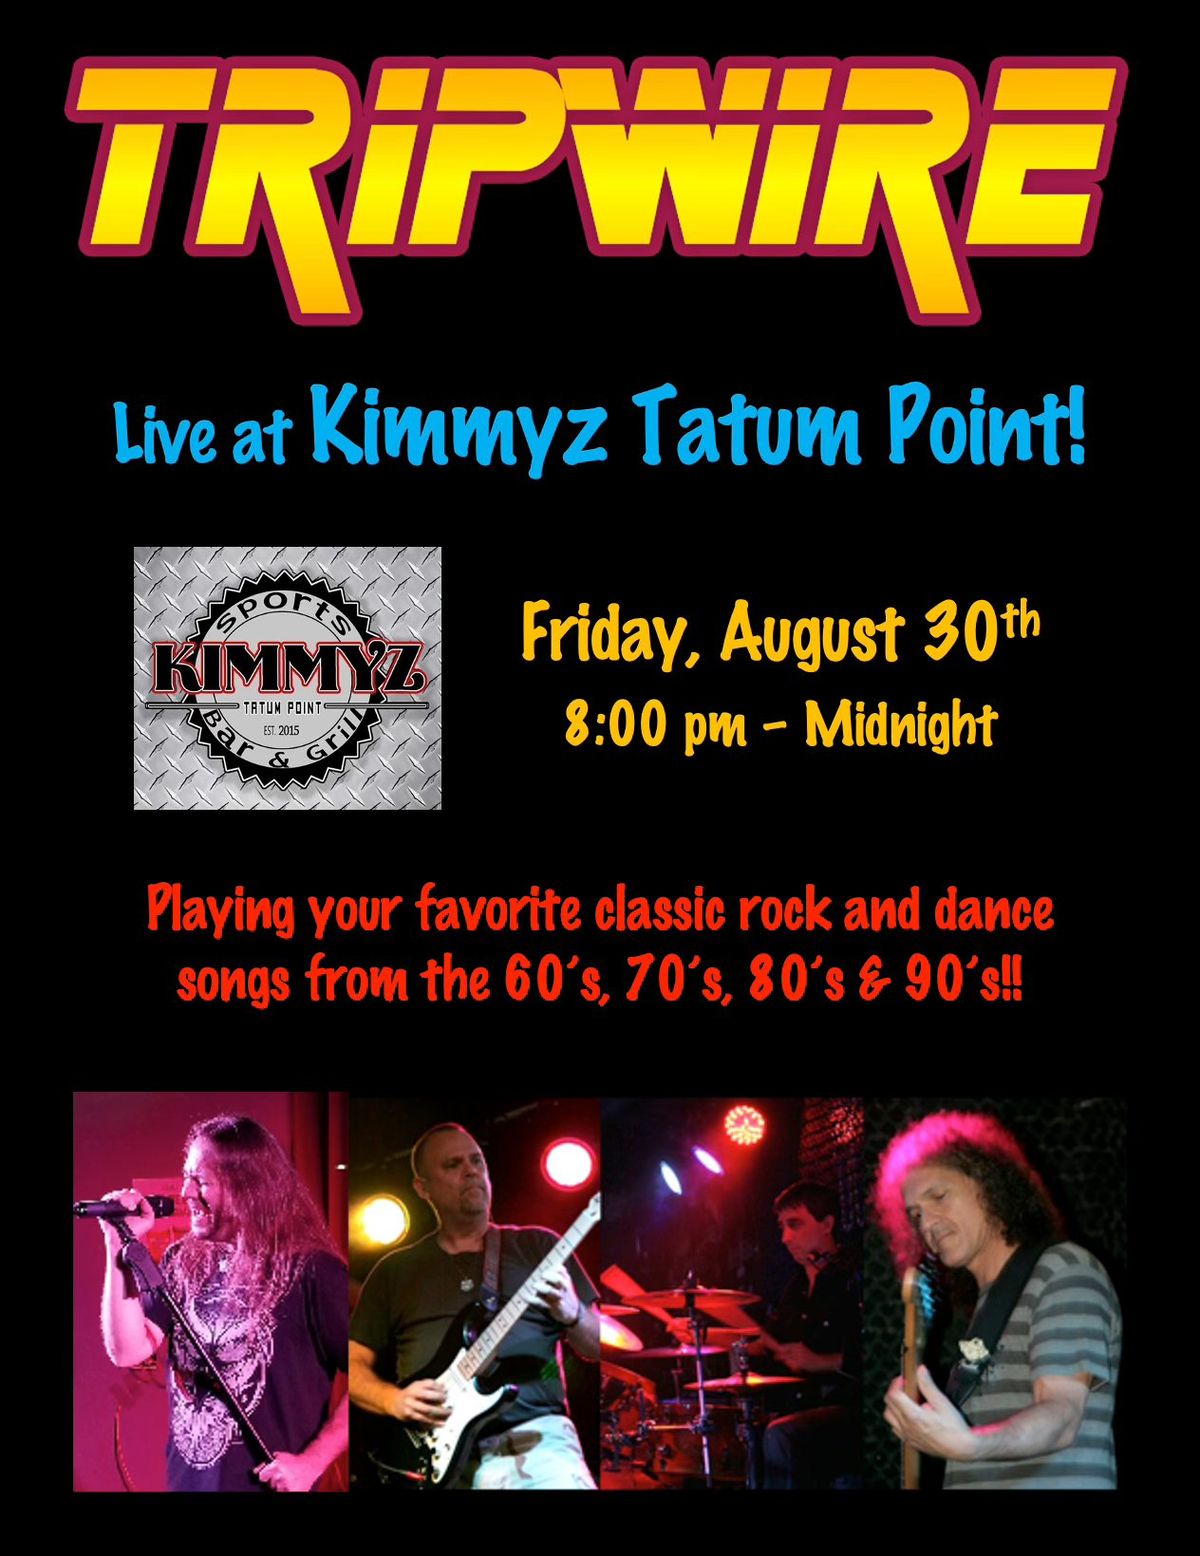 Tripwire Returns to Kimmyz Tatum Point!